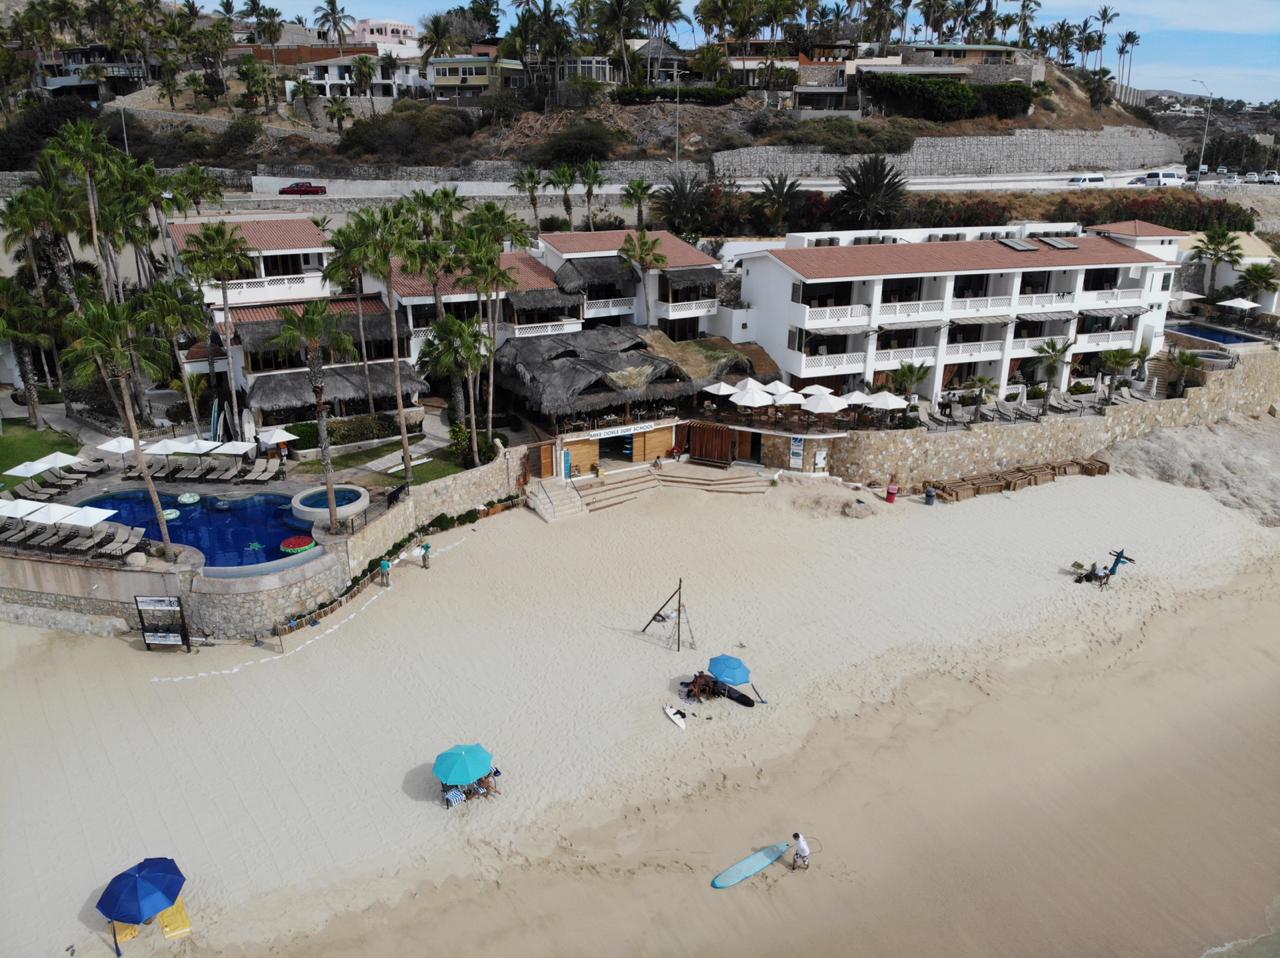 Zdjęcie Playa Acapulquito - popularne miejsce wśród znawców relaksu